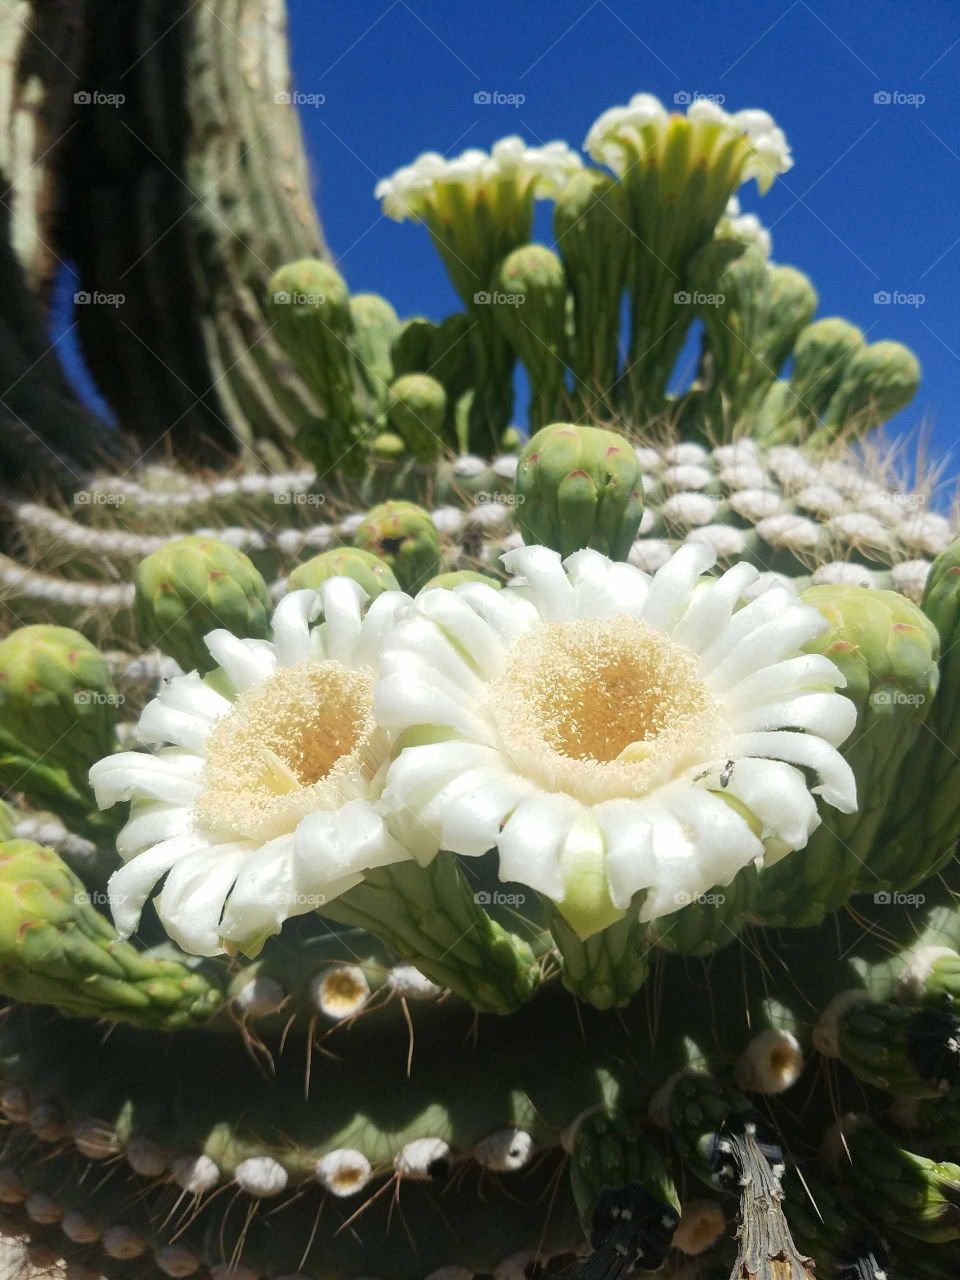 Arizona desert in full bloom